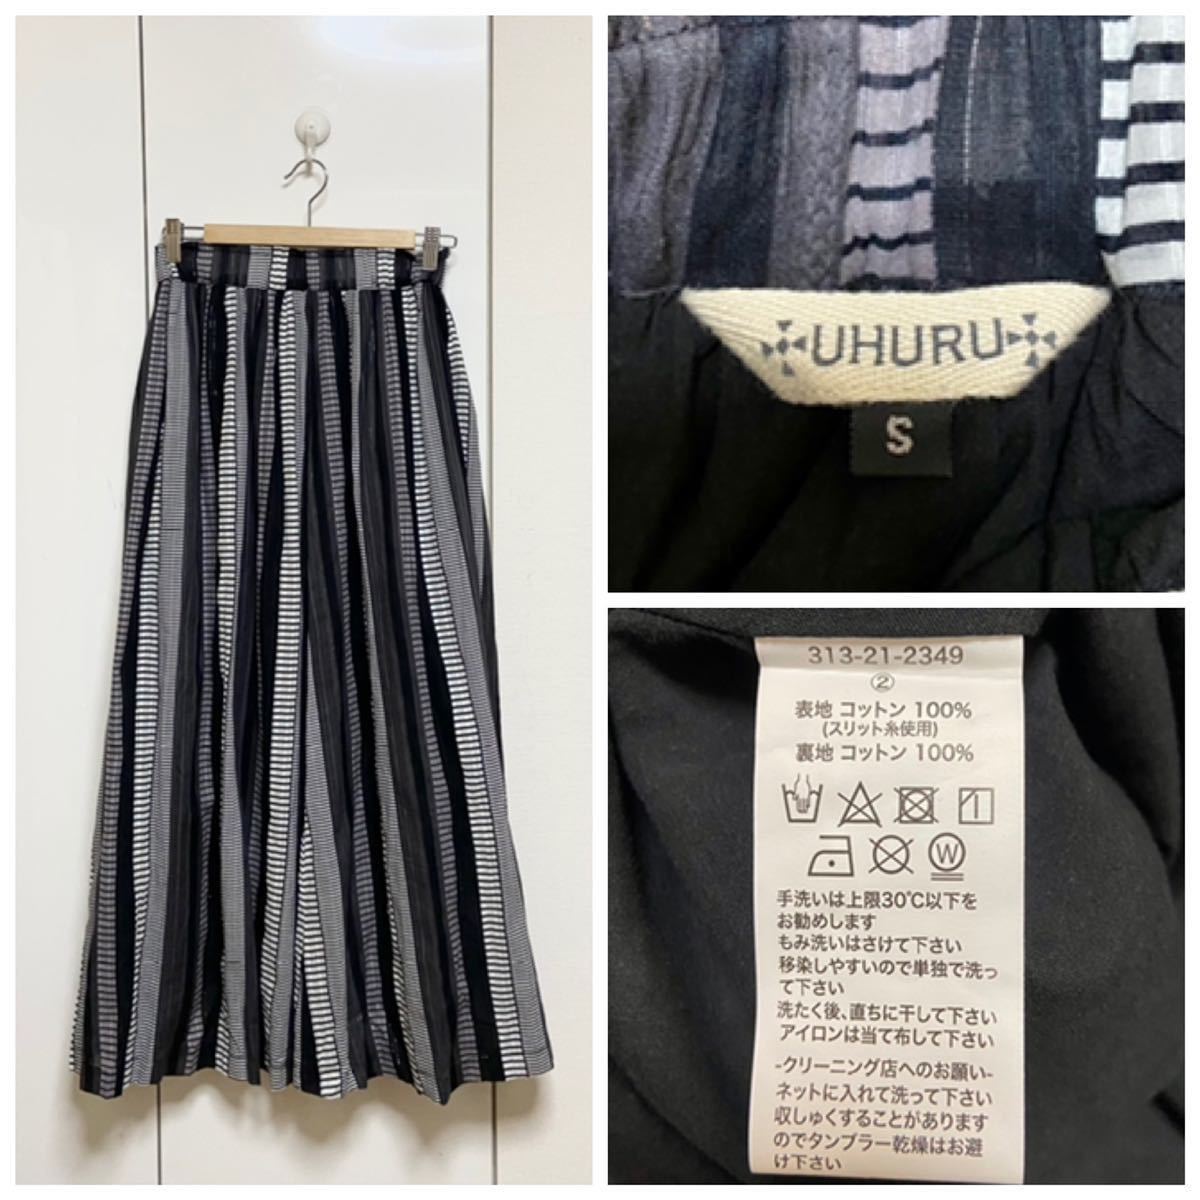  не использовался SHIPS UHURU специальный заказ варьирование принт юбка обычная цена 14040 иен 36 S